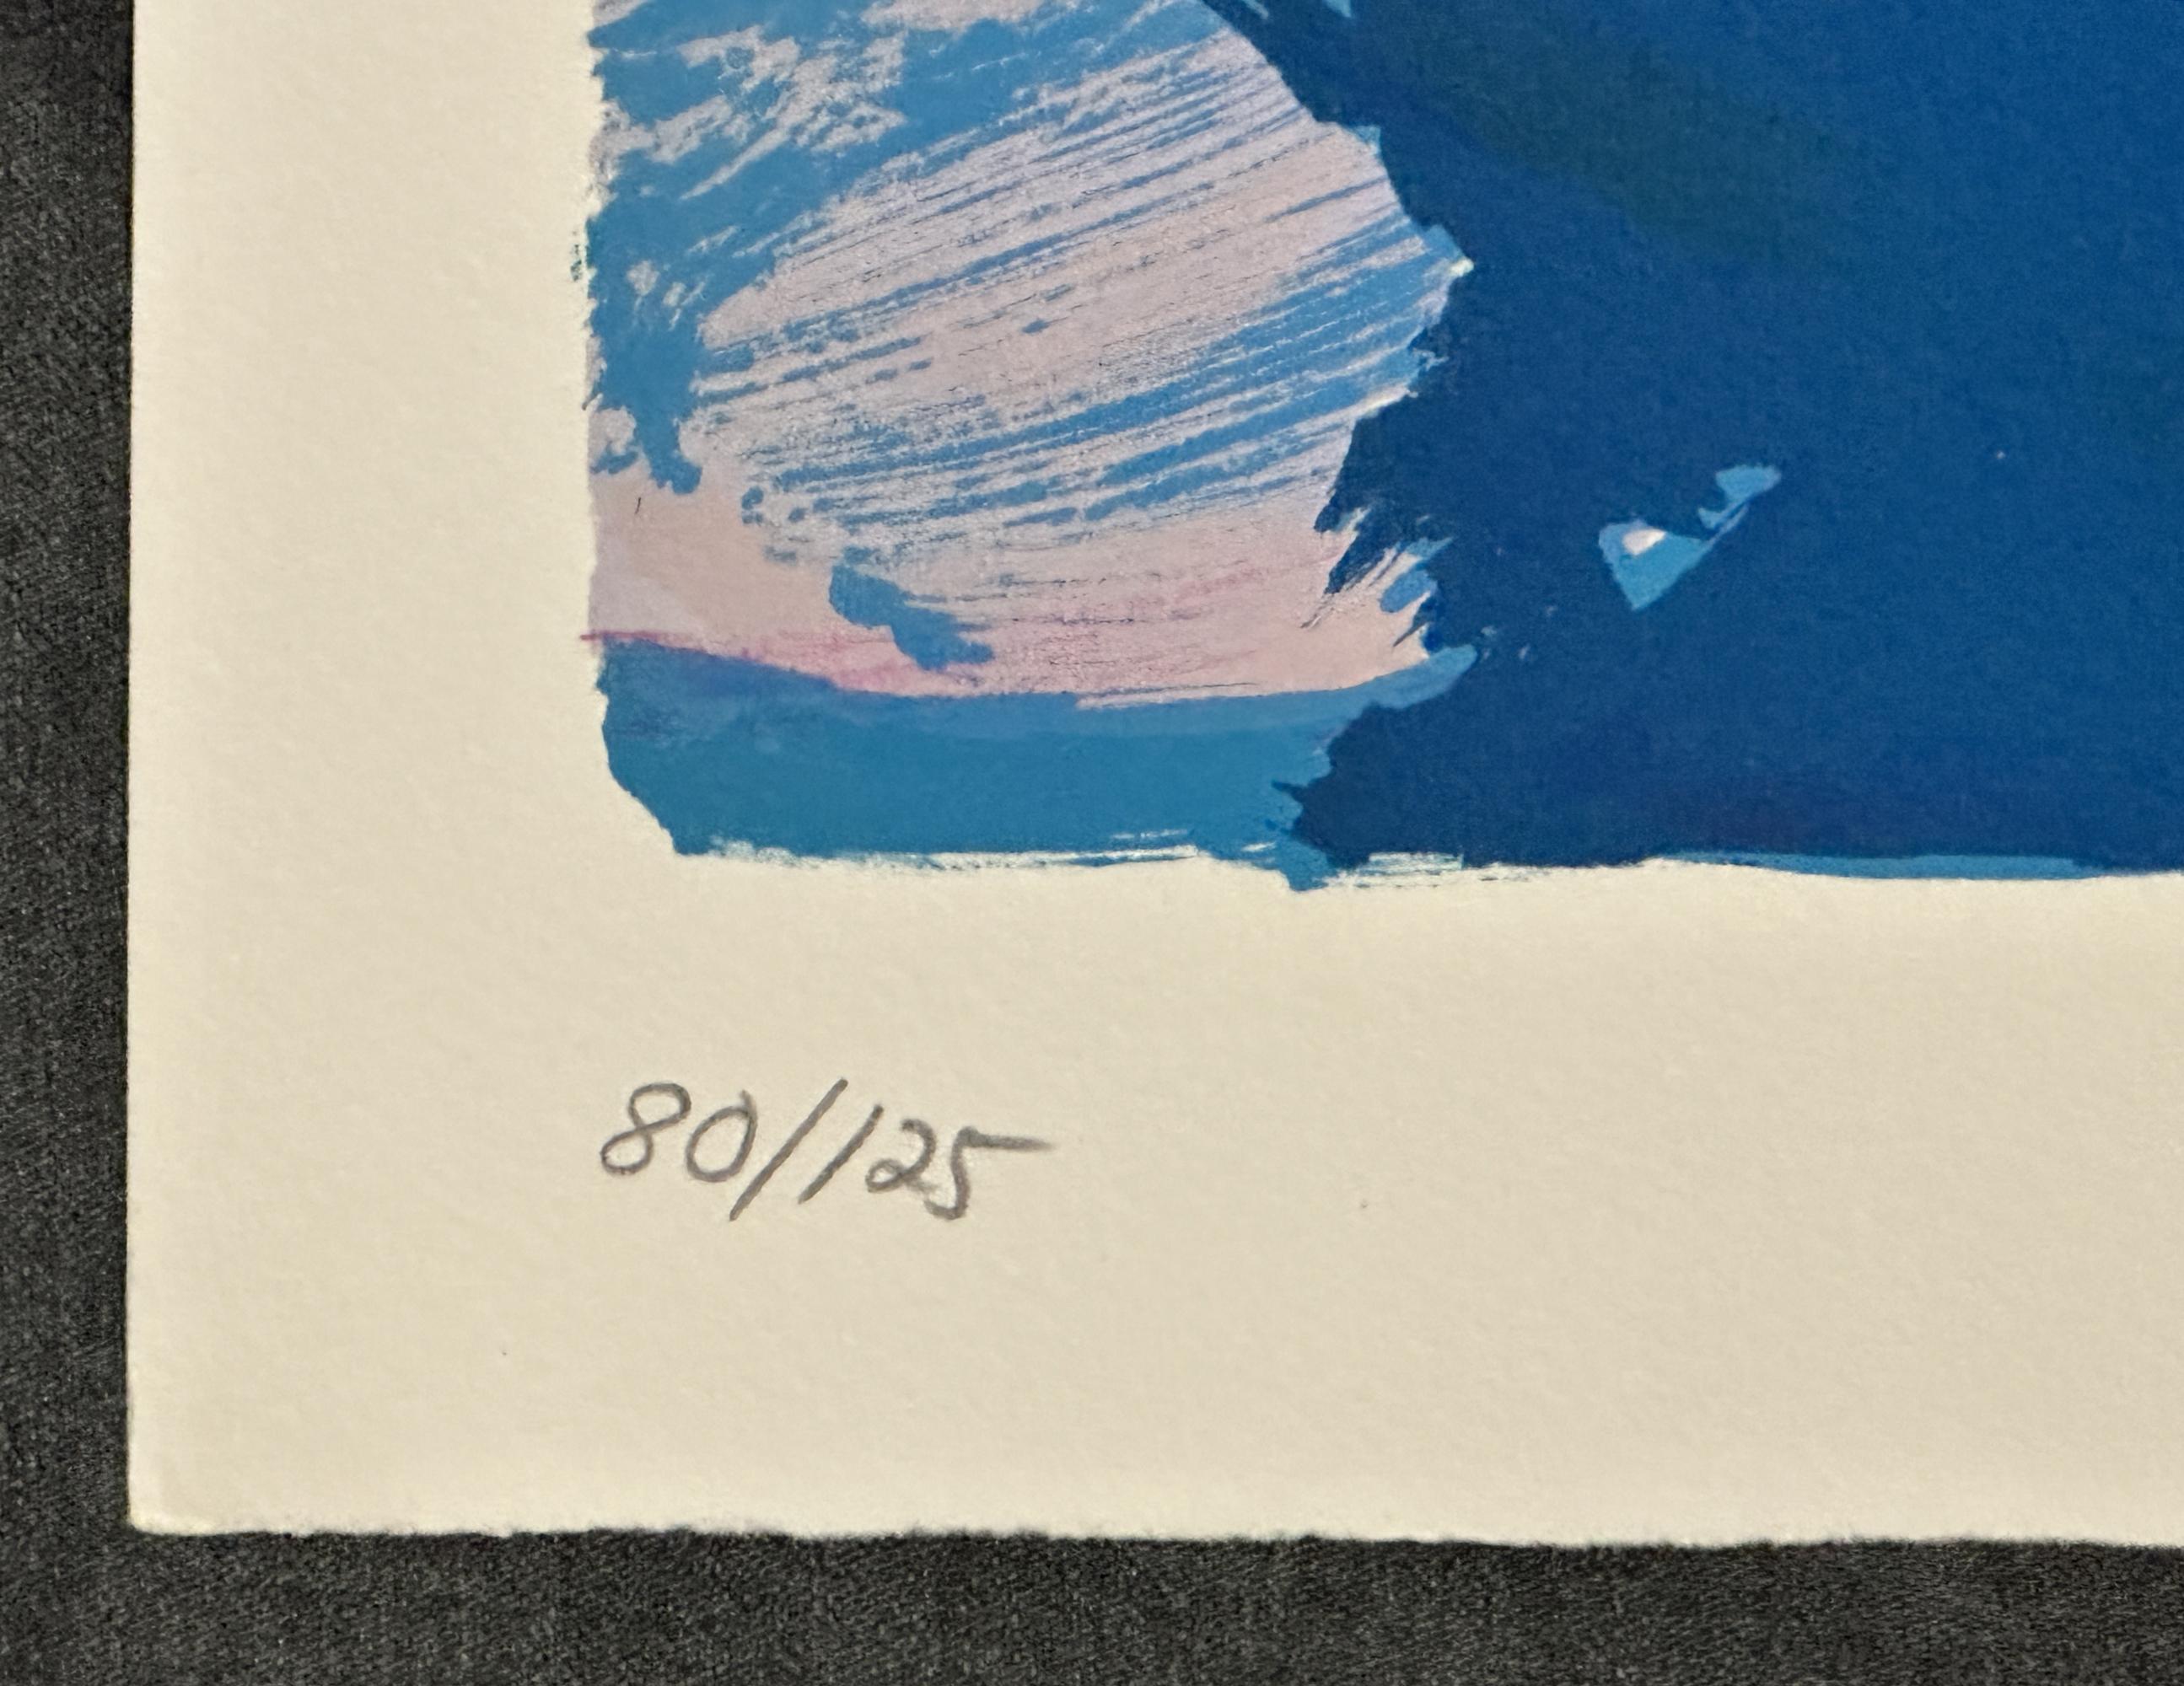 Karel Appel
Chat au repos
Imprimé - Lithographie 23.0'' x 31.5''
Edition : signée et numérotée au crayon 80/125

Non encadré et en excellent état.

Je dépeins ma vision de ces choses sur ce moment unique qui dépasse le temps et le lieu : seuls les